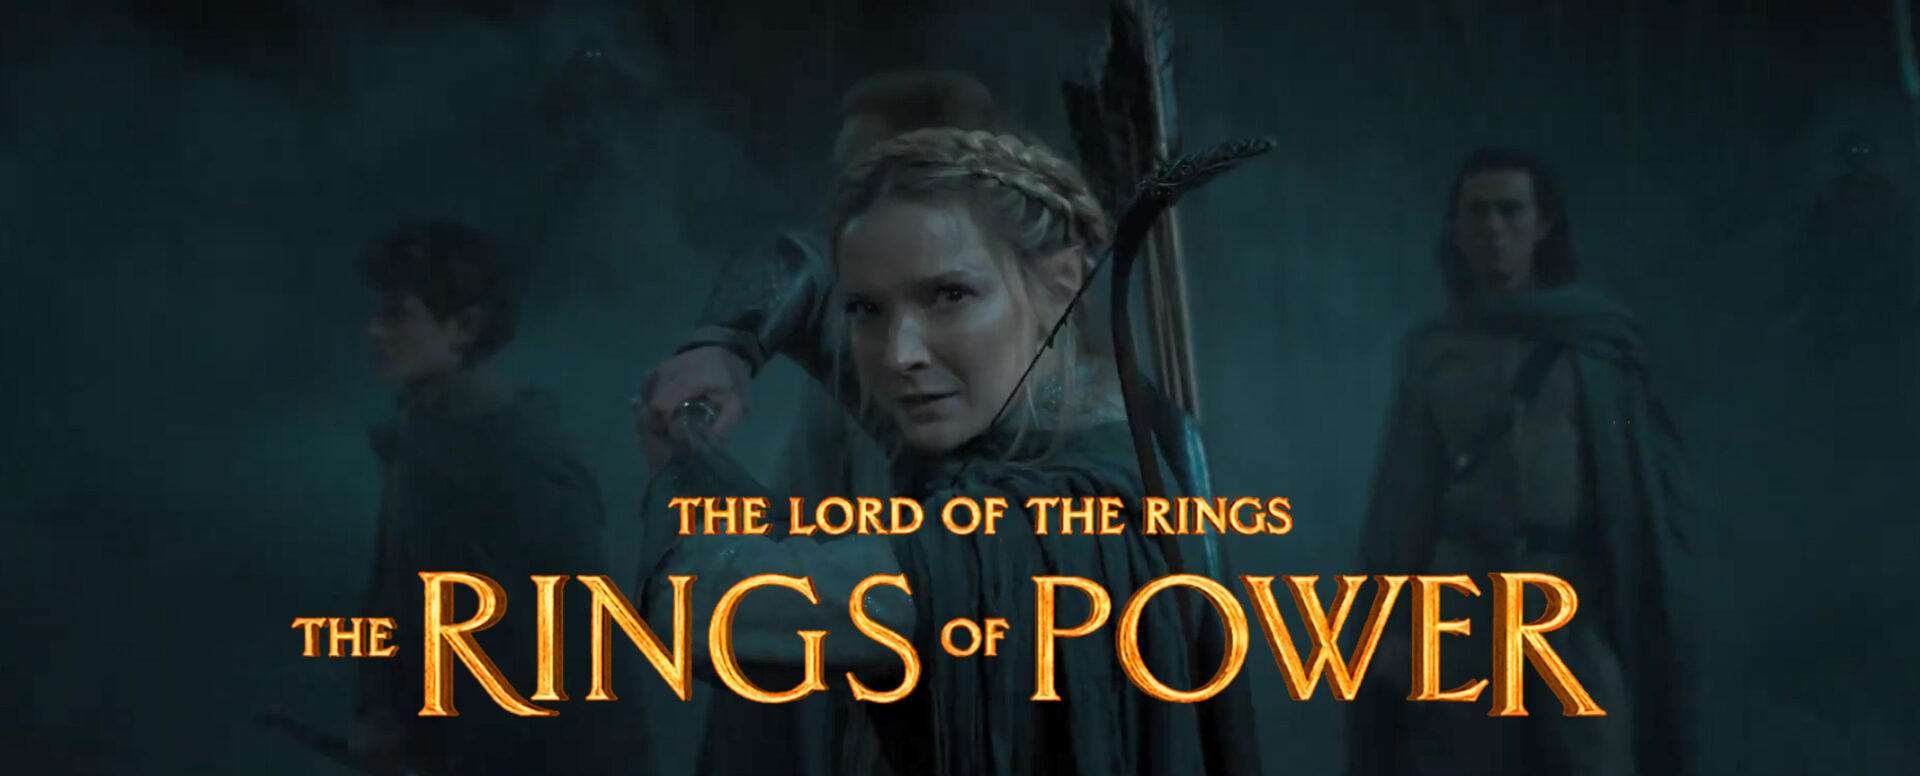 rings of power season 2 teaser trailer banner